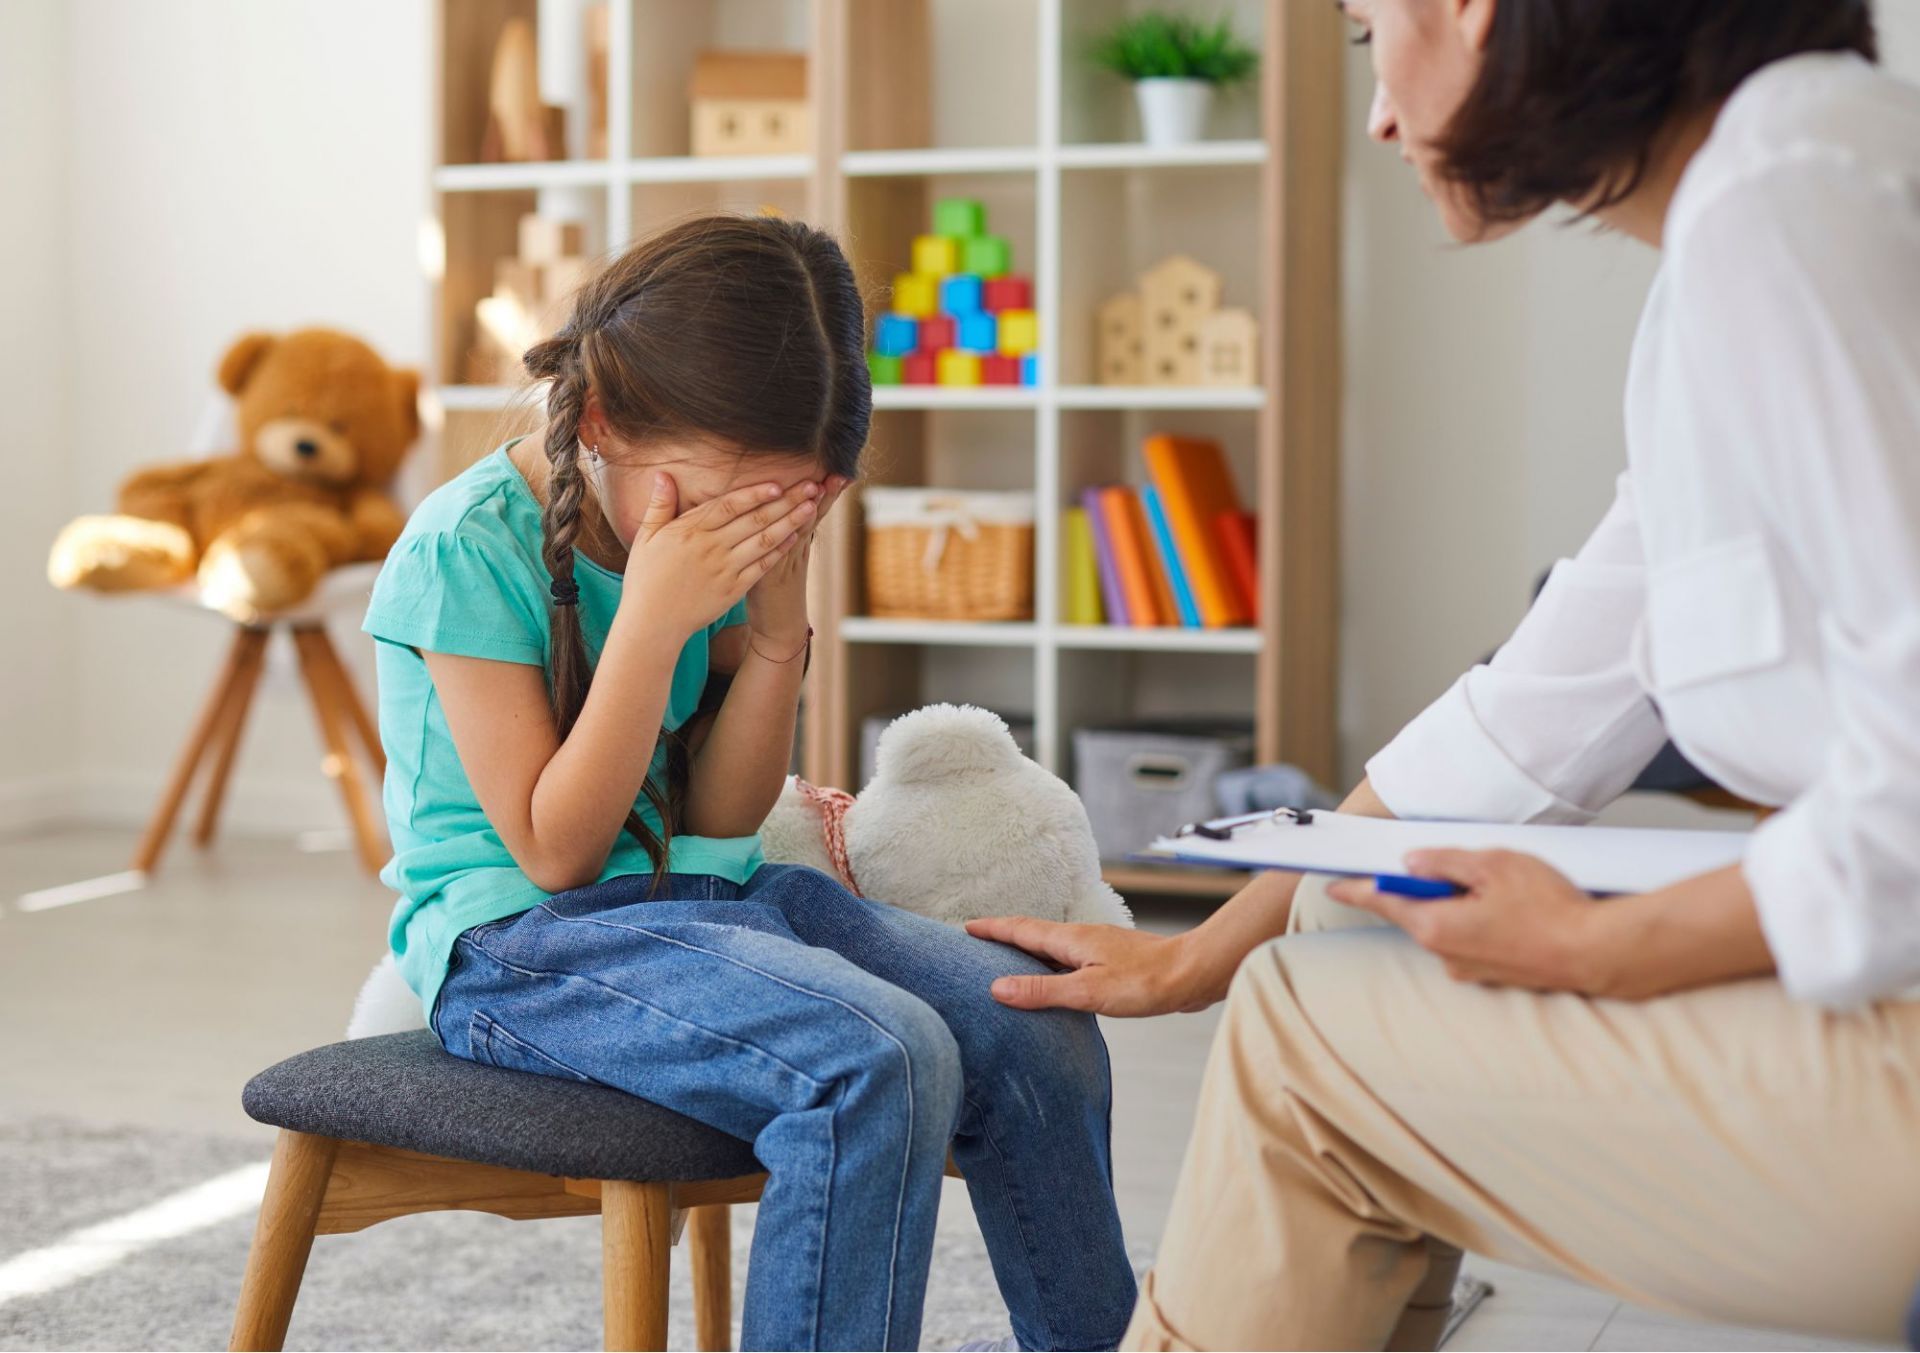 L2 Certificate in Understanding Distressed Behaviour in Children